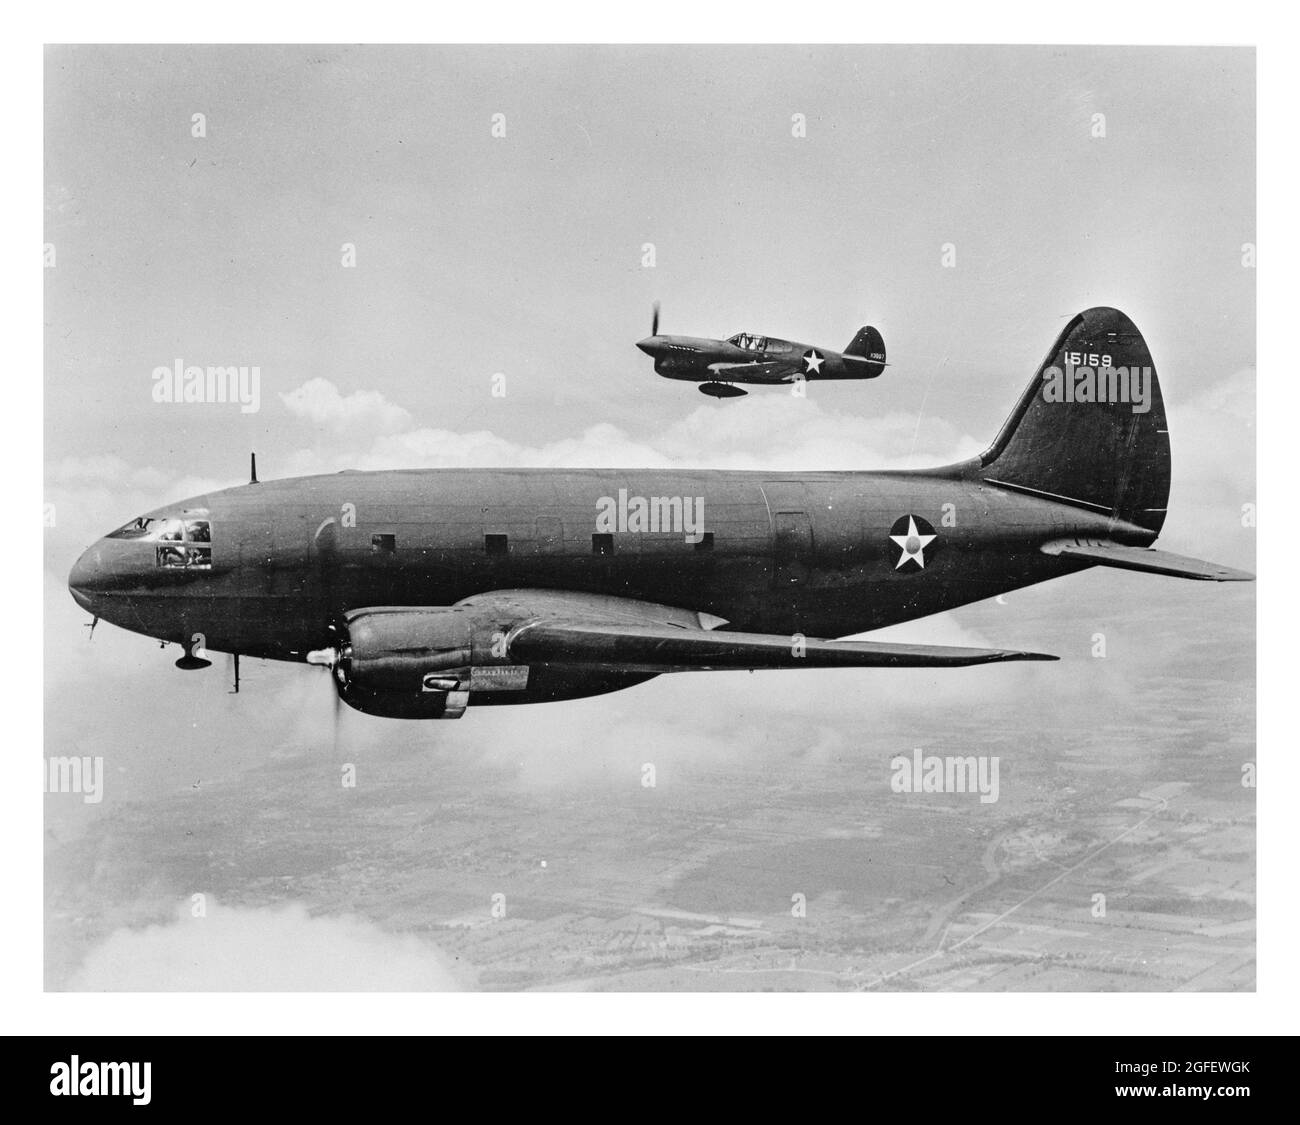 Aerei in volo. La nave in primo piano è un trasporto C-46. L'aereo più distante è un combattente P-40. 1943. Foto Stock